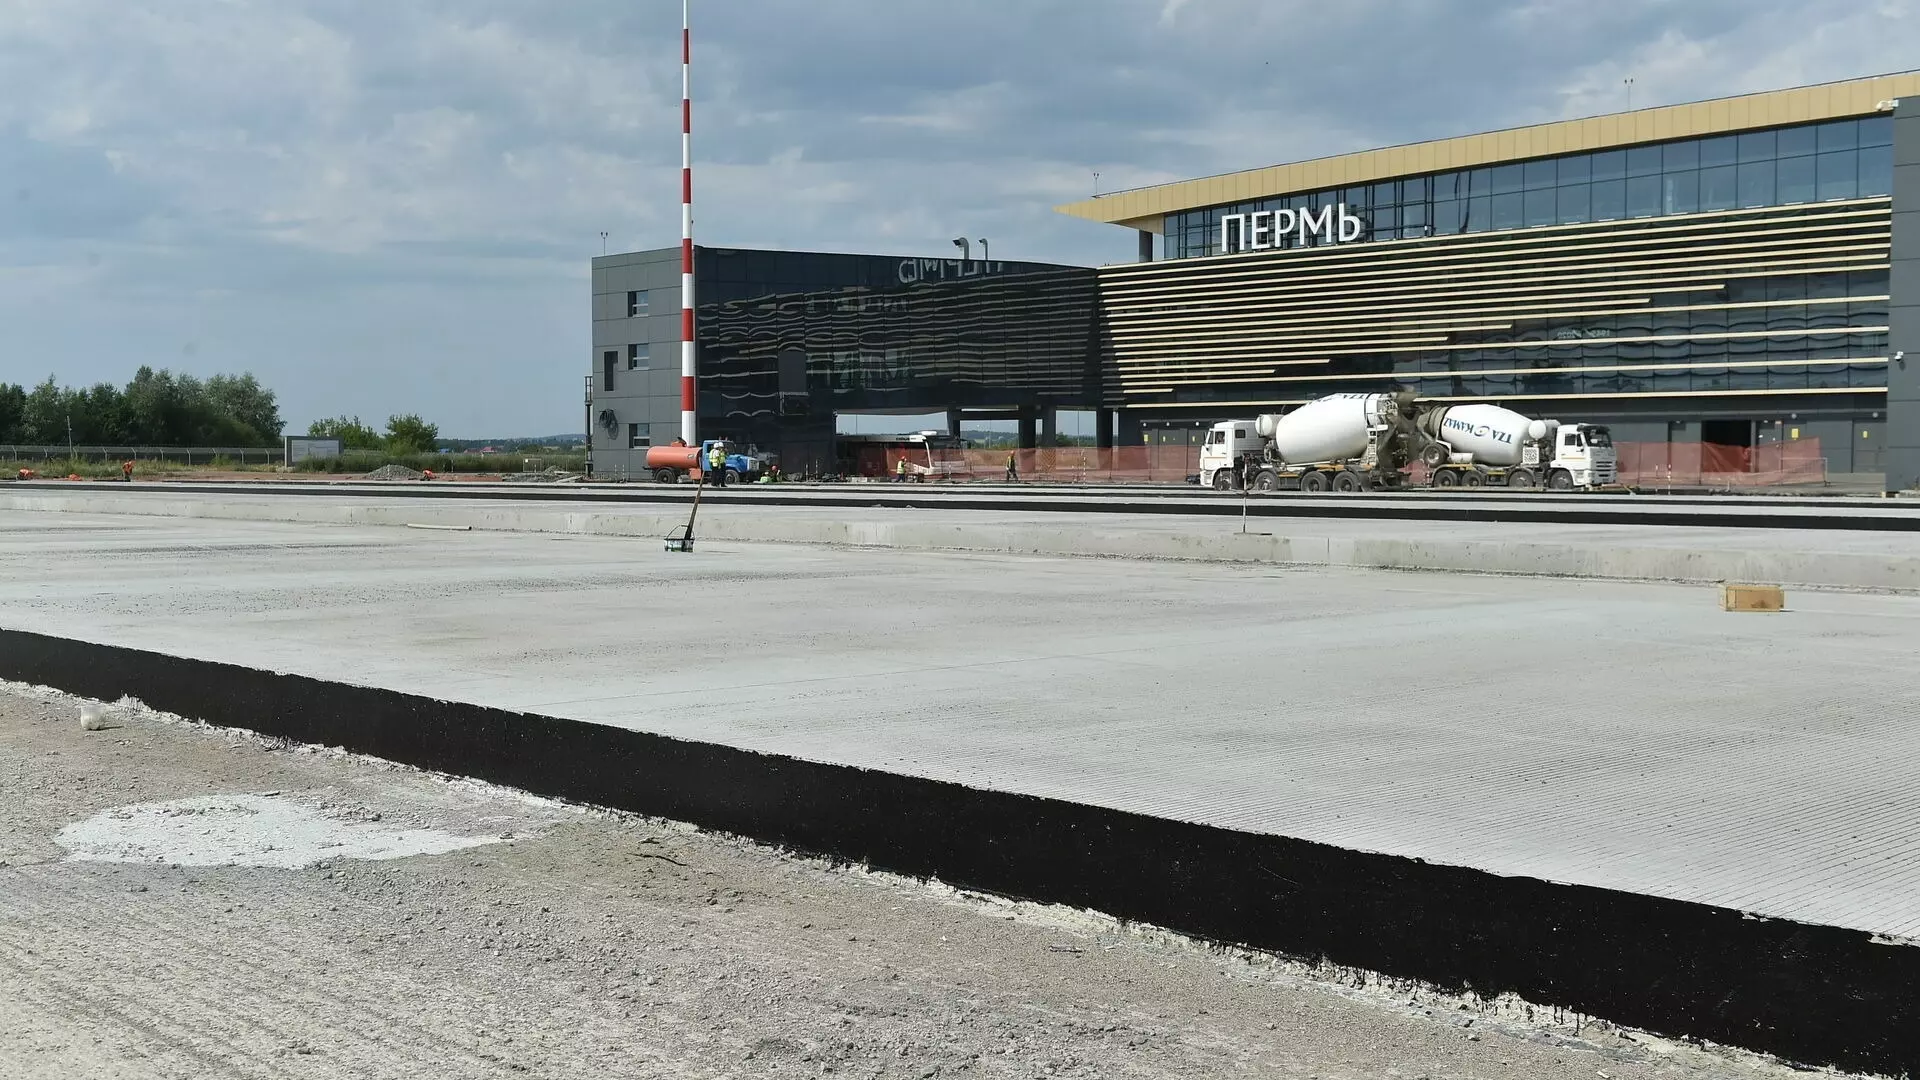 Правительство РФ может прекратить контракт с генподрядчиком пермского аэропорта